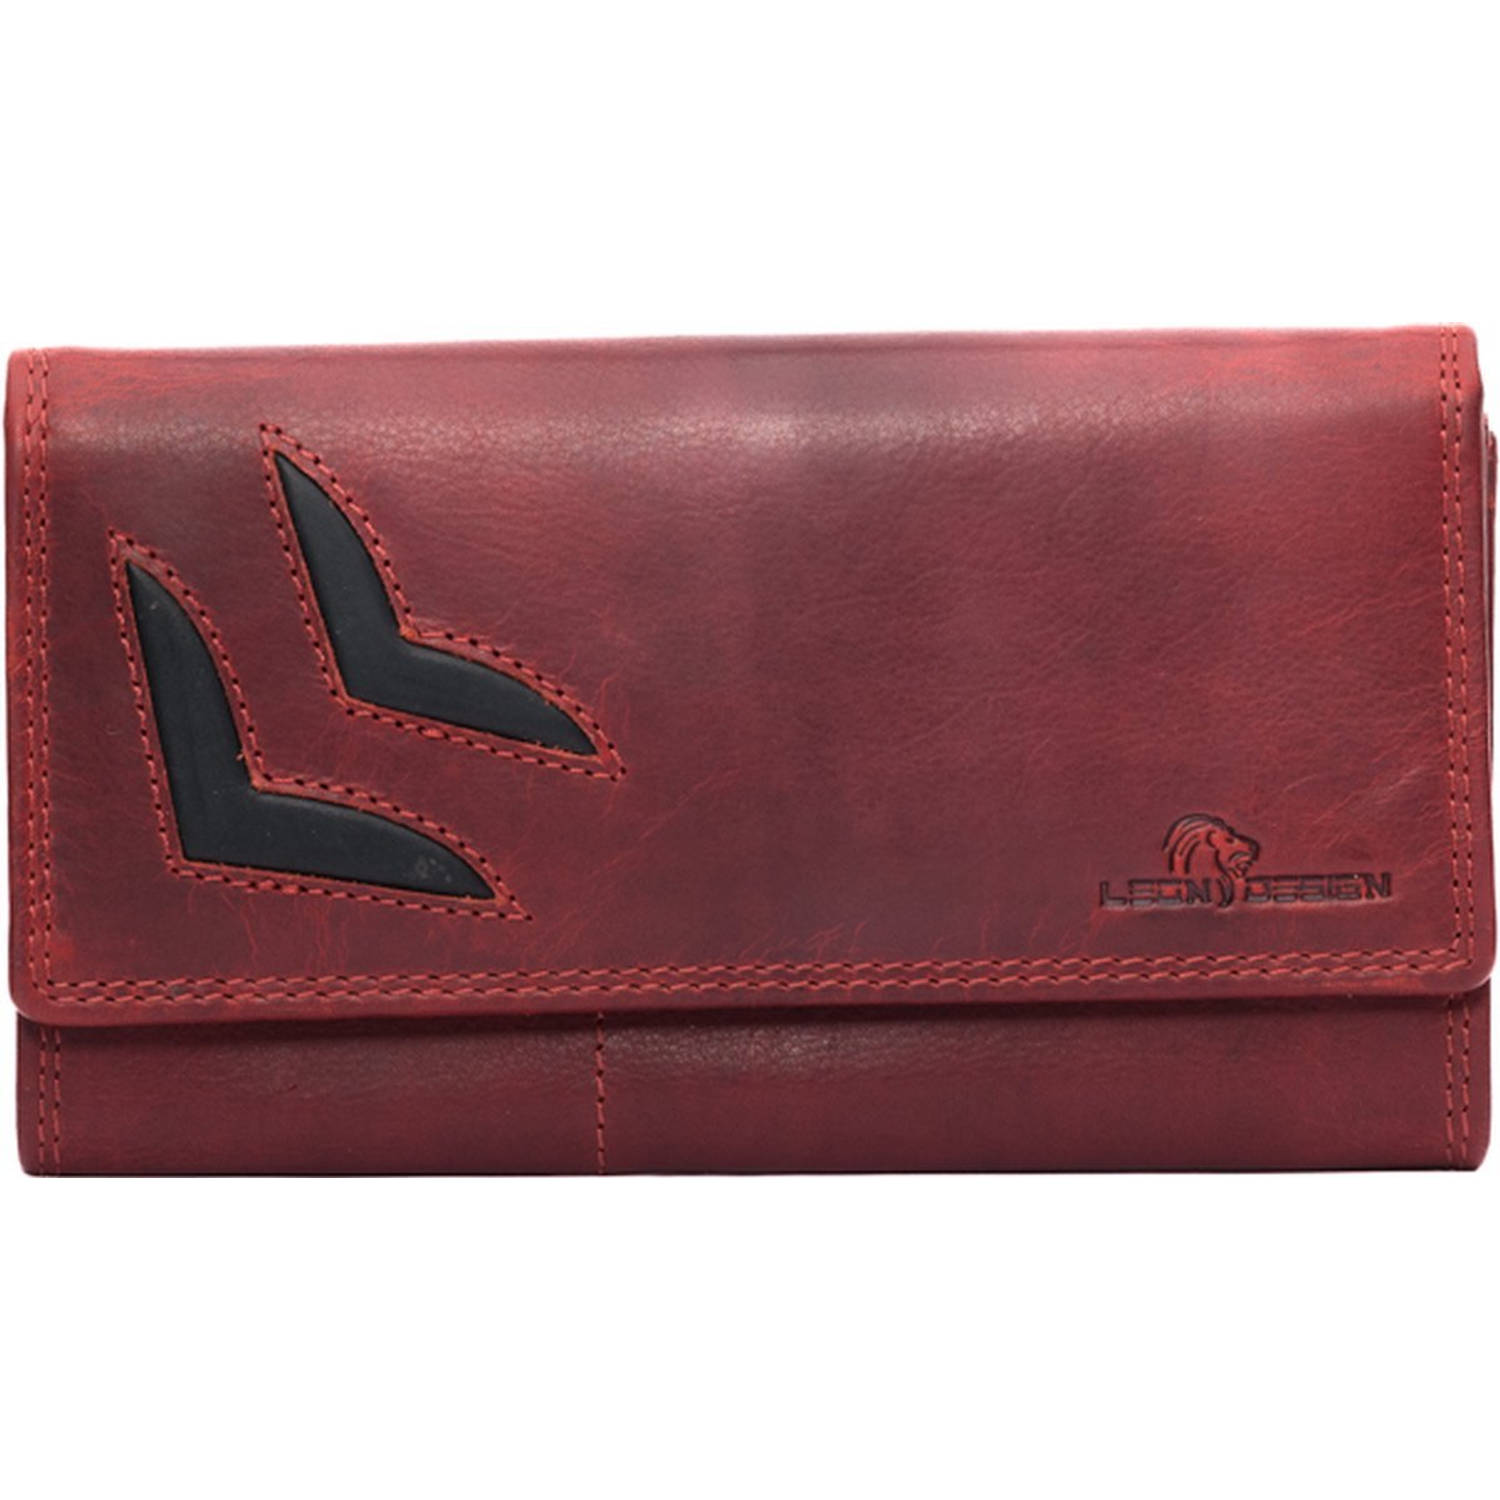 HillBurry VL777011 3608V -dames portemonnee rood leer